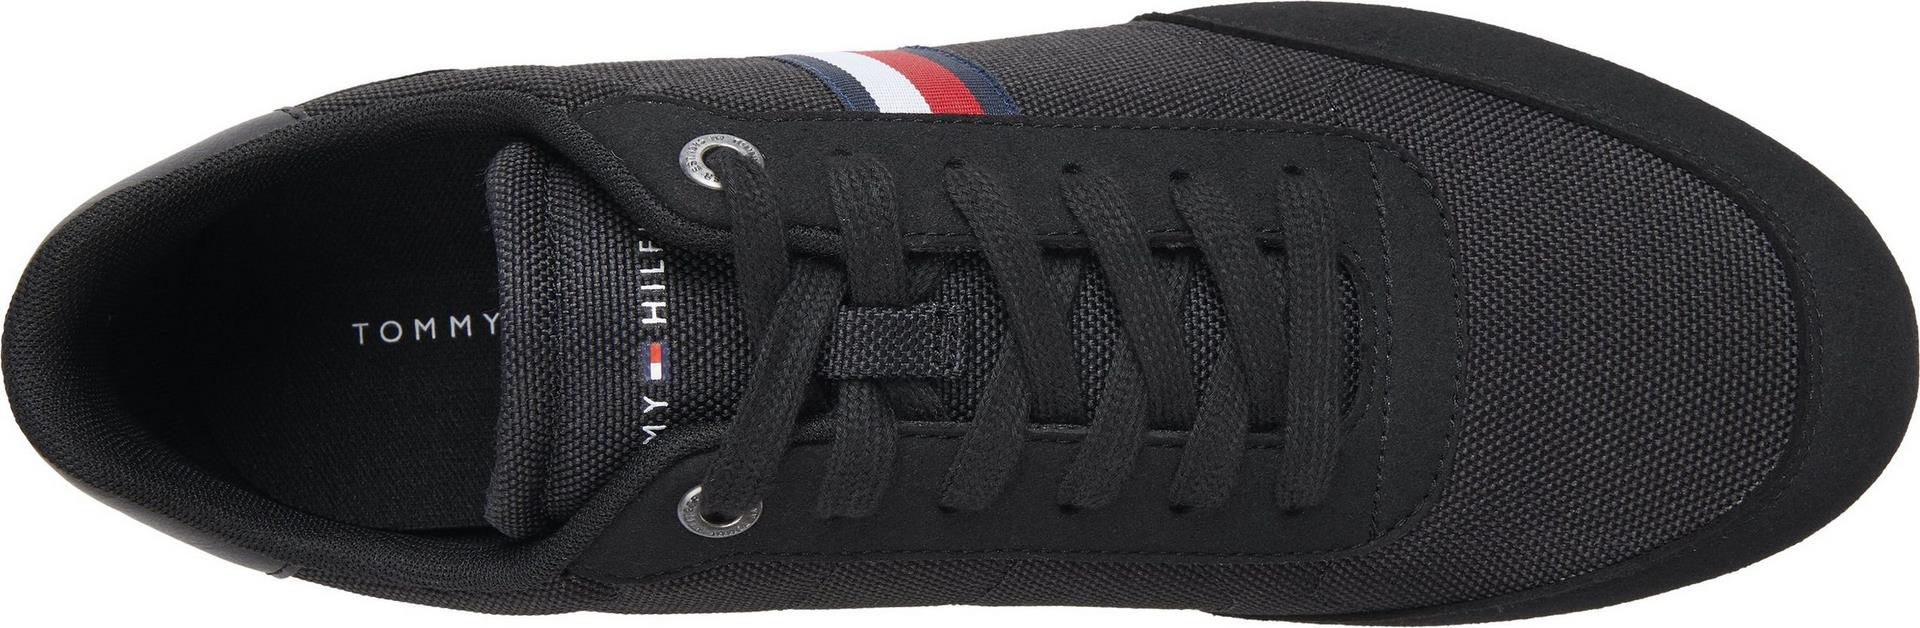 Tommy Hilfiger Essential Mesh Runner Herren Sneaker in drei Farben für je 70,86€ (statt 80€)